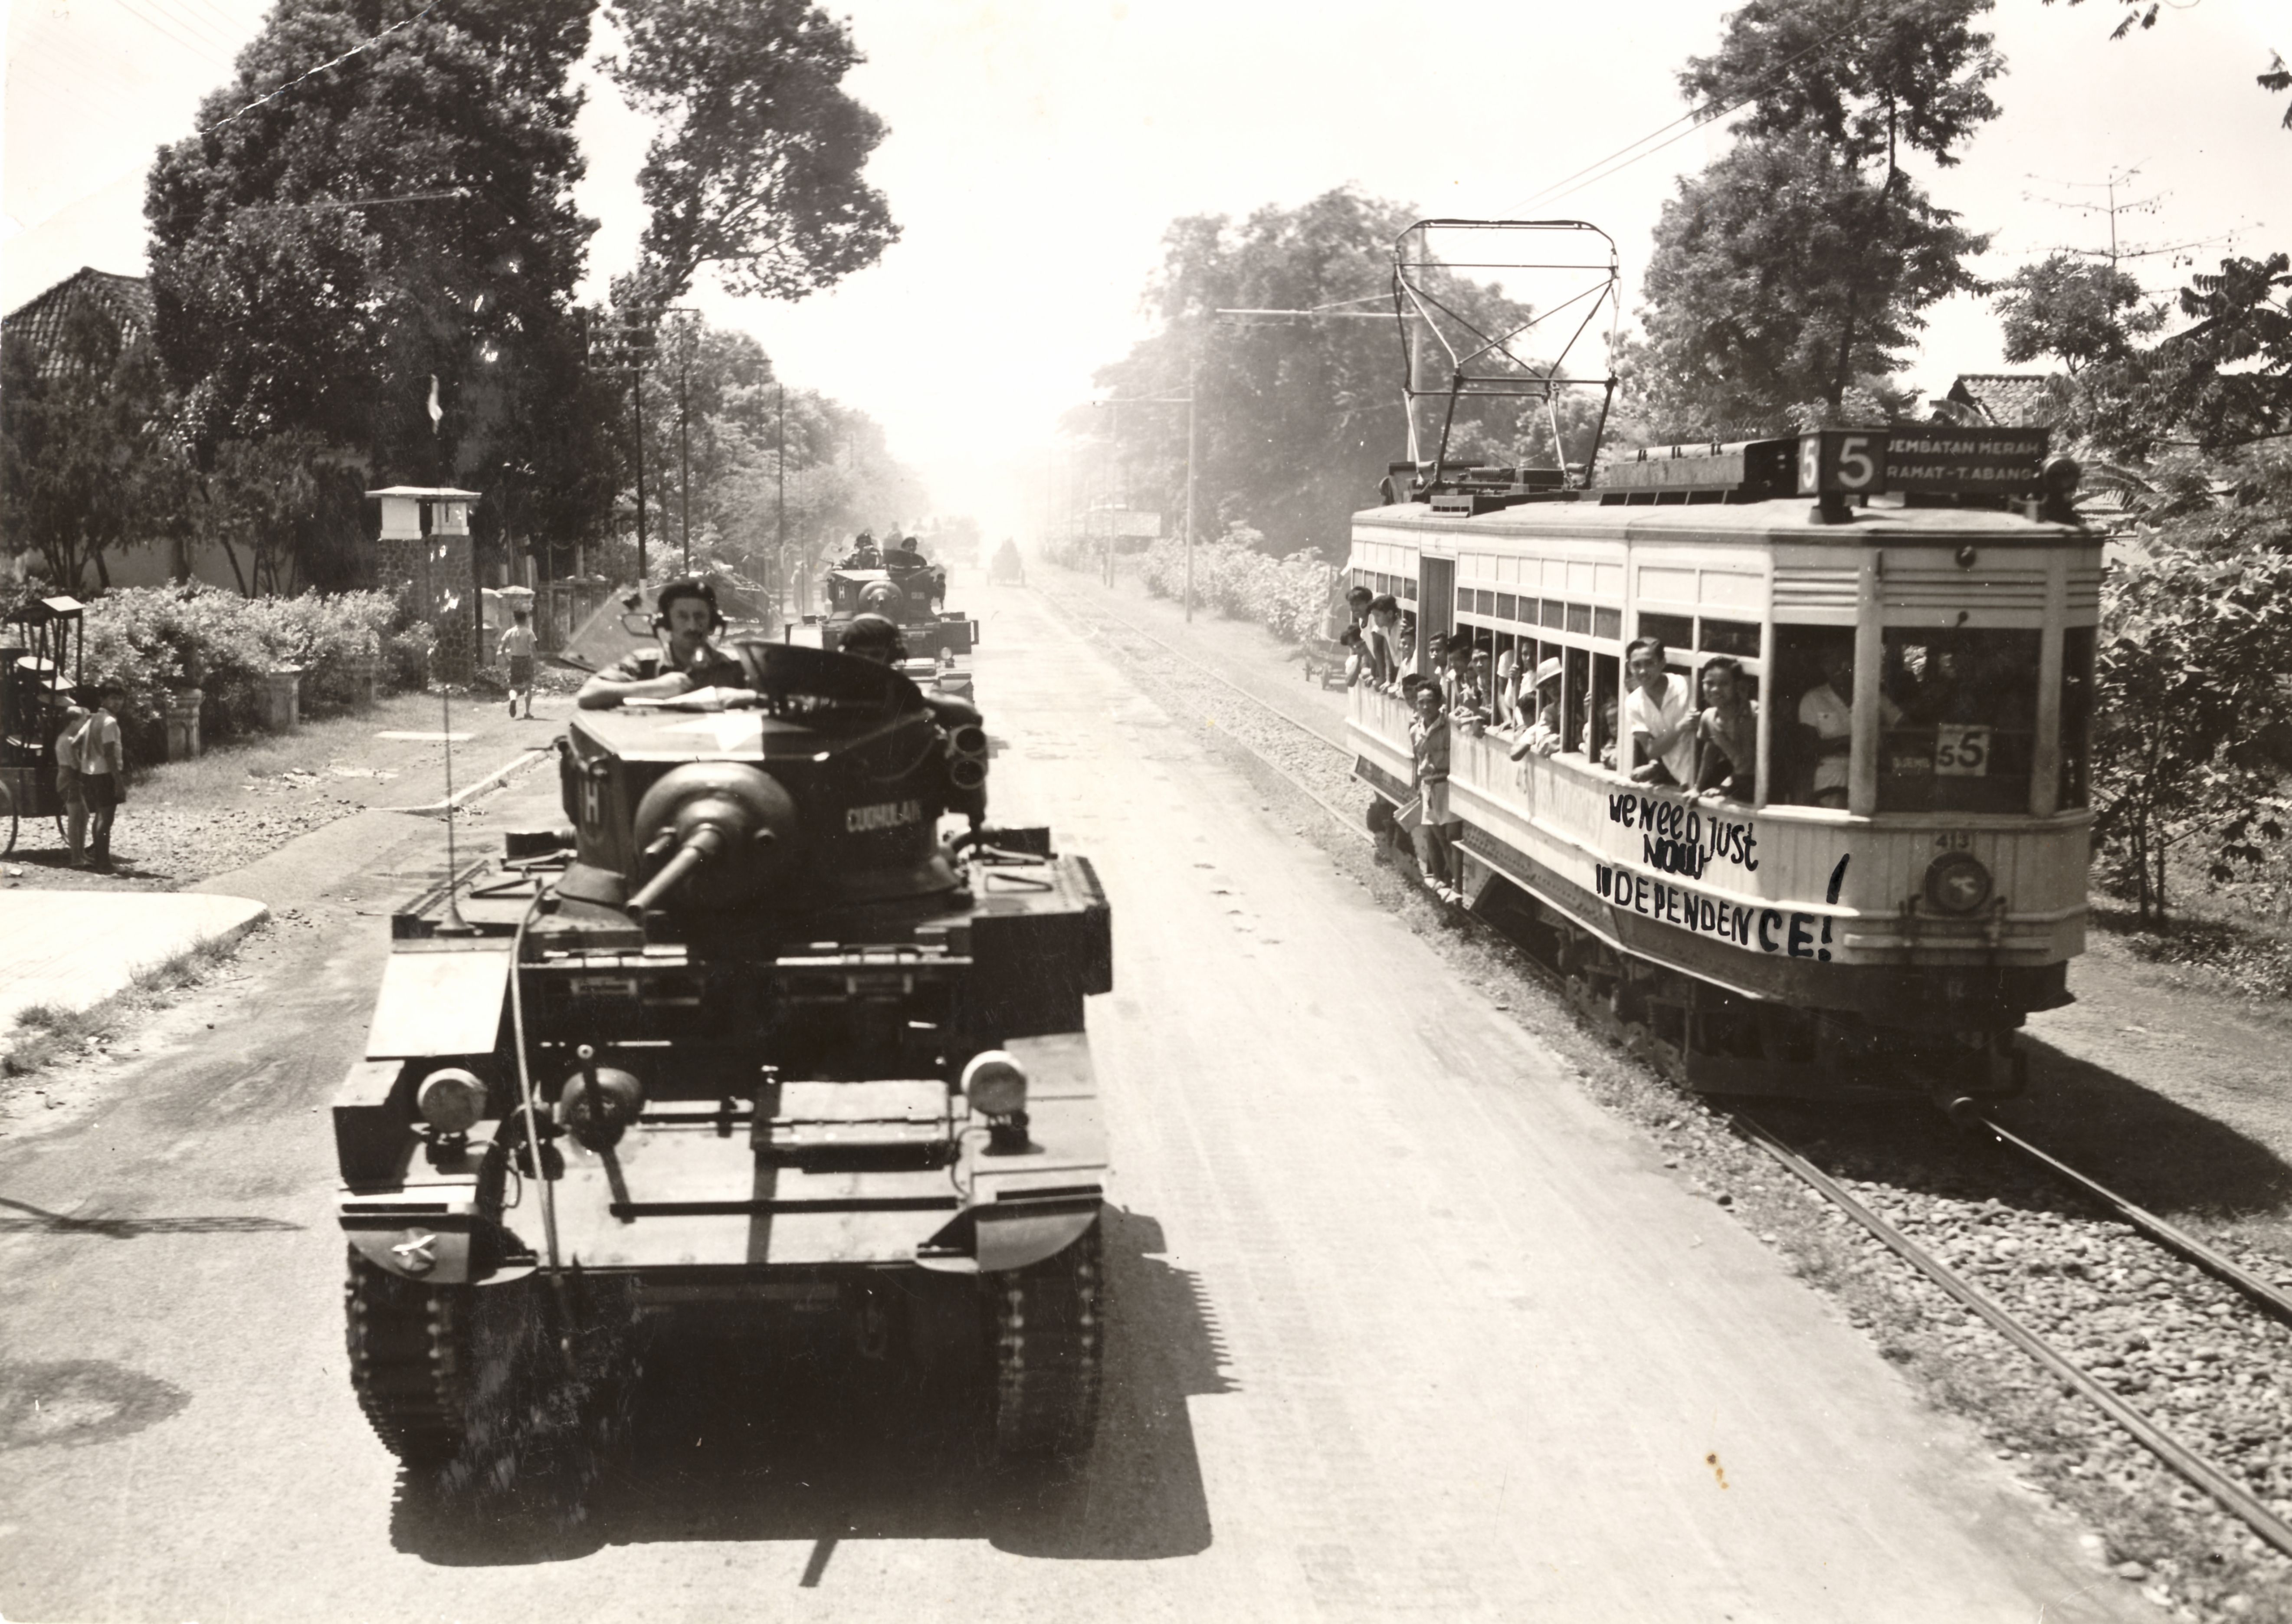 Britse tanks patrouilleren in de straten van Batavia. Op de tram onafhankelijkheidsleuzen. (Opname: 29-10-1945) BeeldbankWO2/NIOD